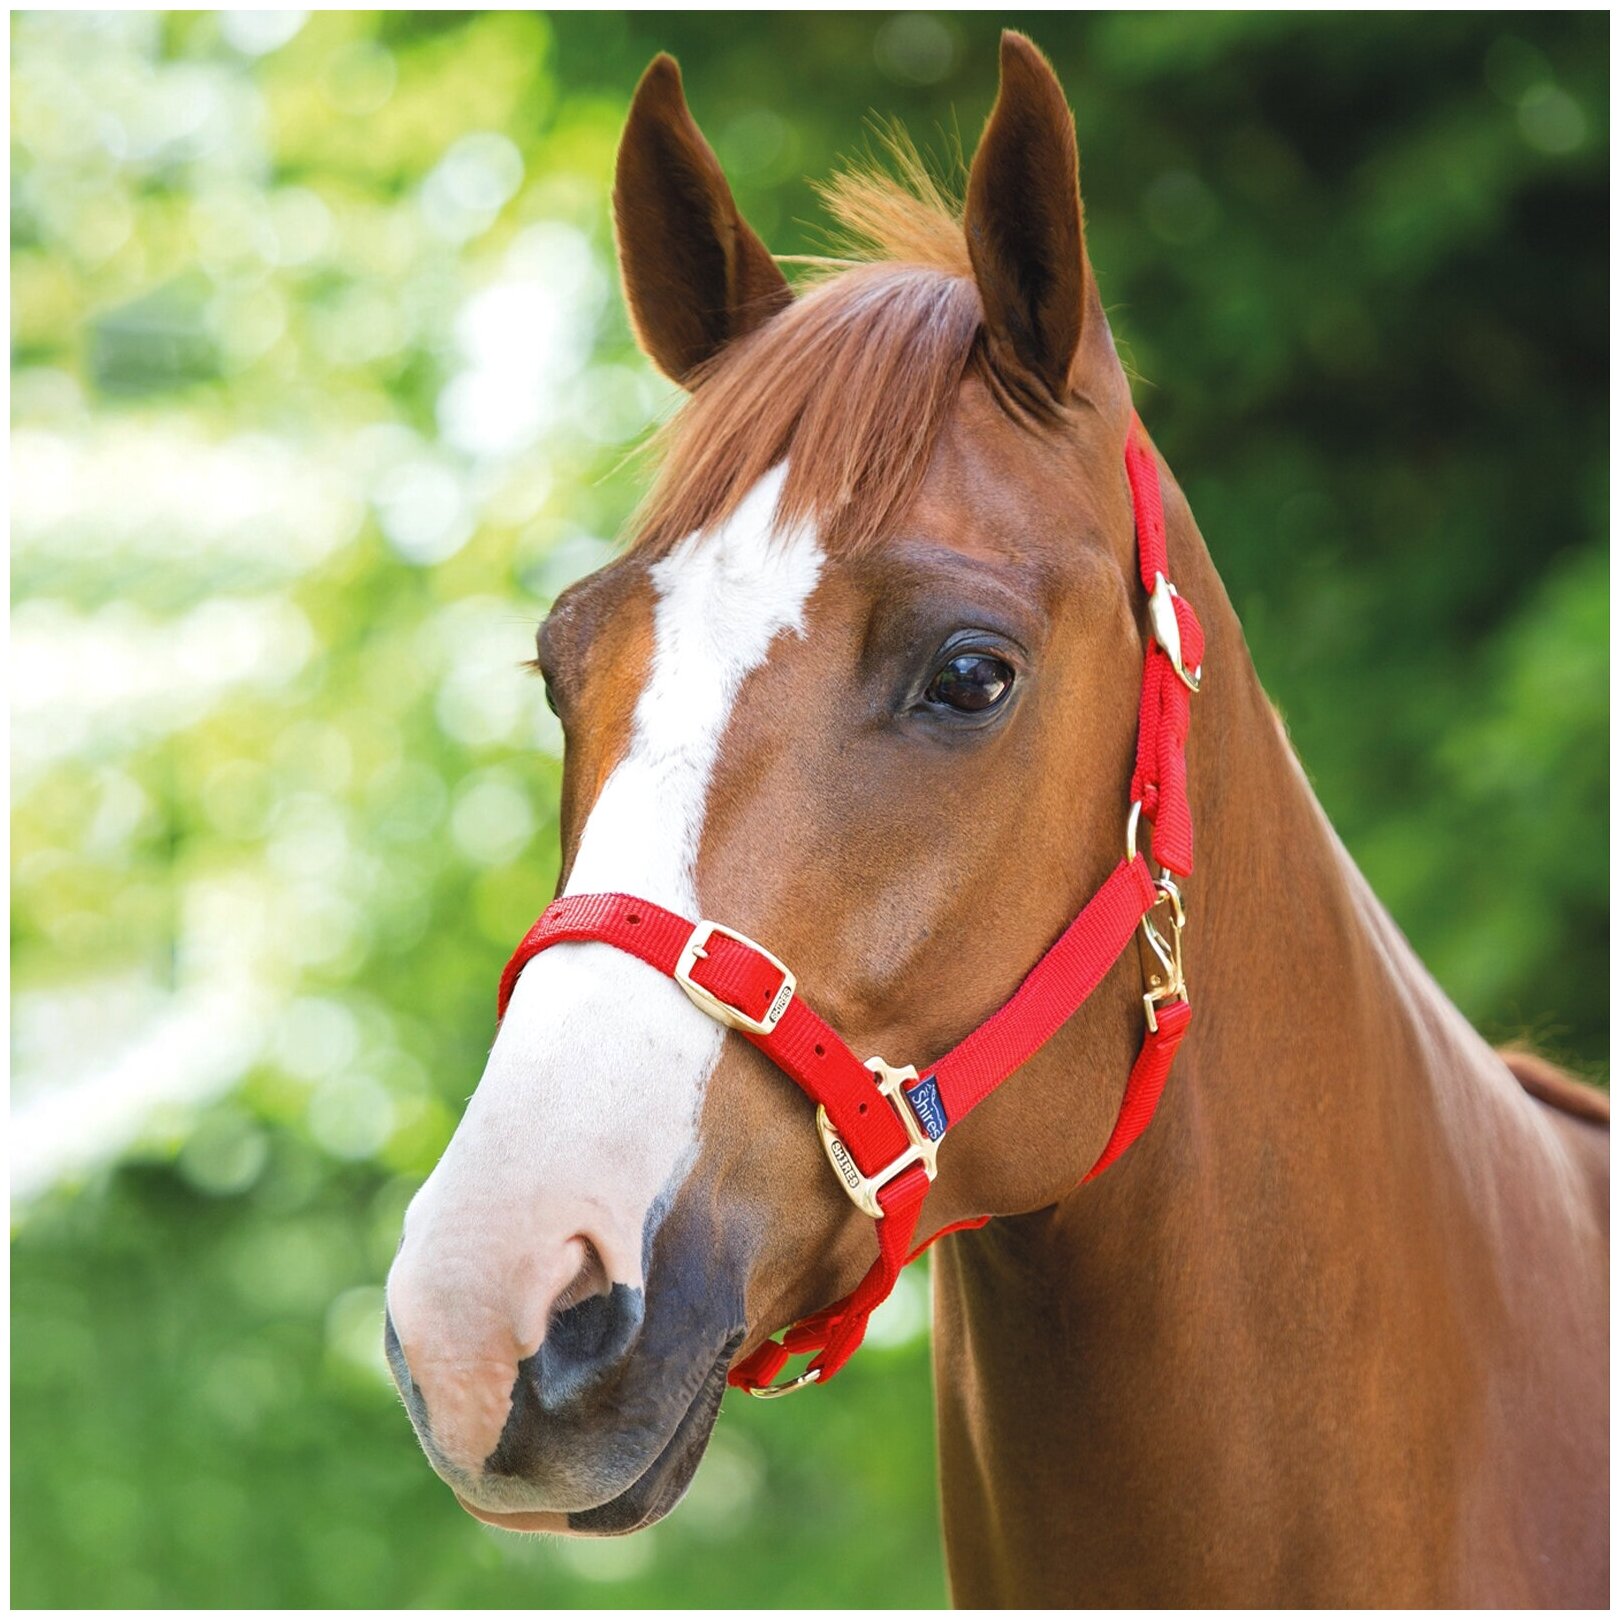 Недоуздок для лошади регулируемый SHIRES, FULL, красный (Великобритания)